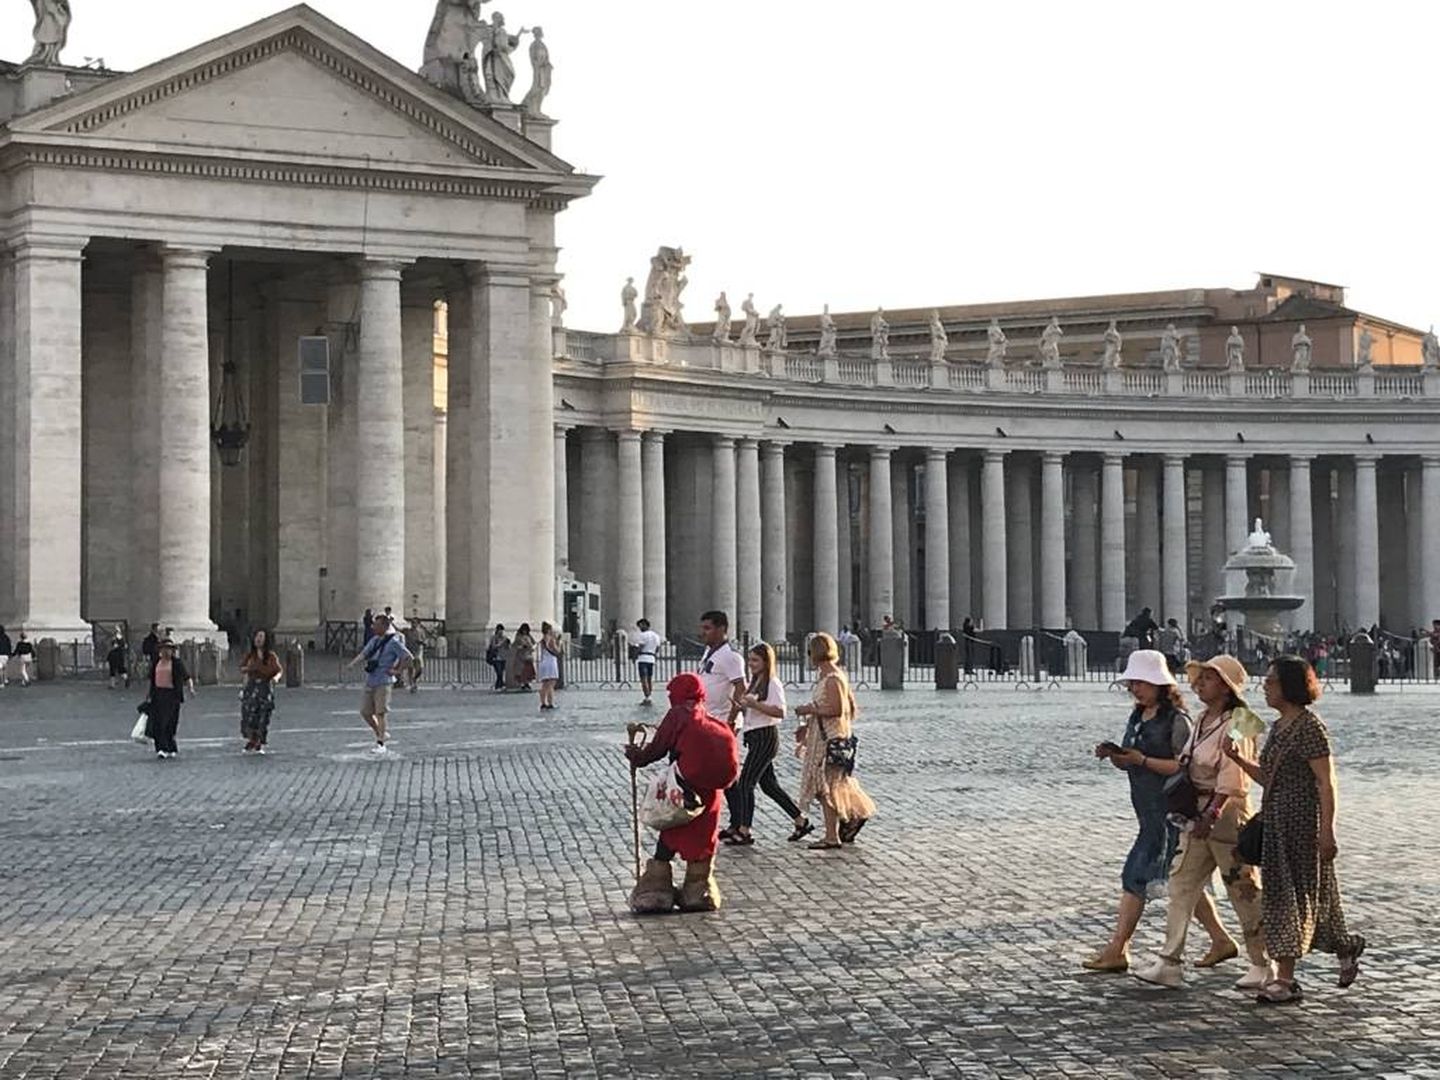 Un indigente en la Plaza de San Pedro del Vaticano, entre turistas. (J.B.)